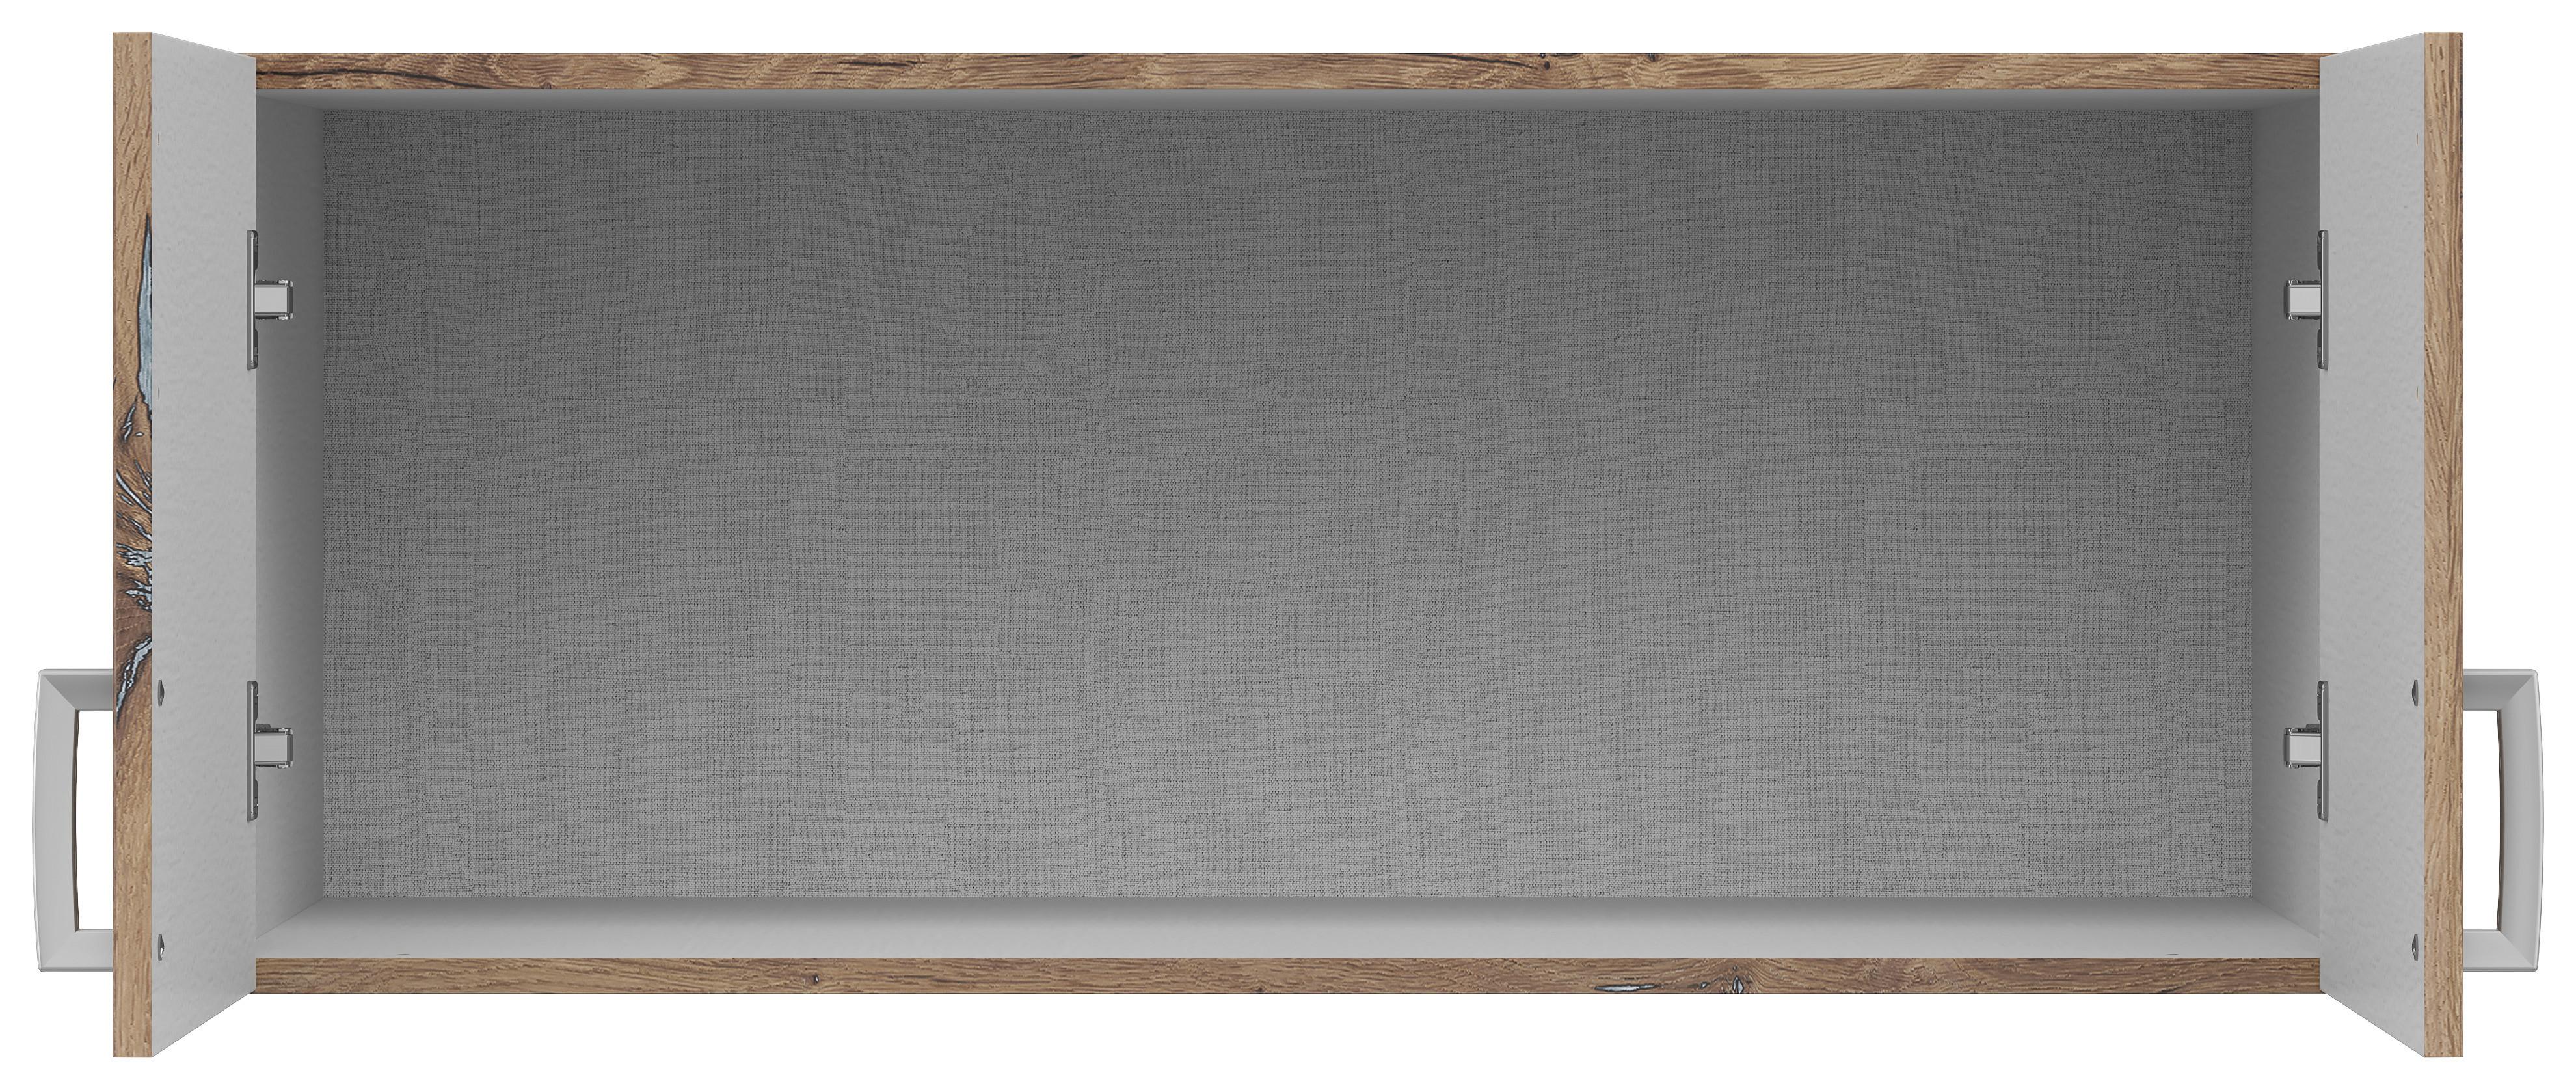 Nástavec Brando 91cm Dekor Dub Flagstaff - barvy dubu/barvy stříbra, Konvenční, kompozitní dřevo/plast (91cm)